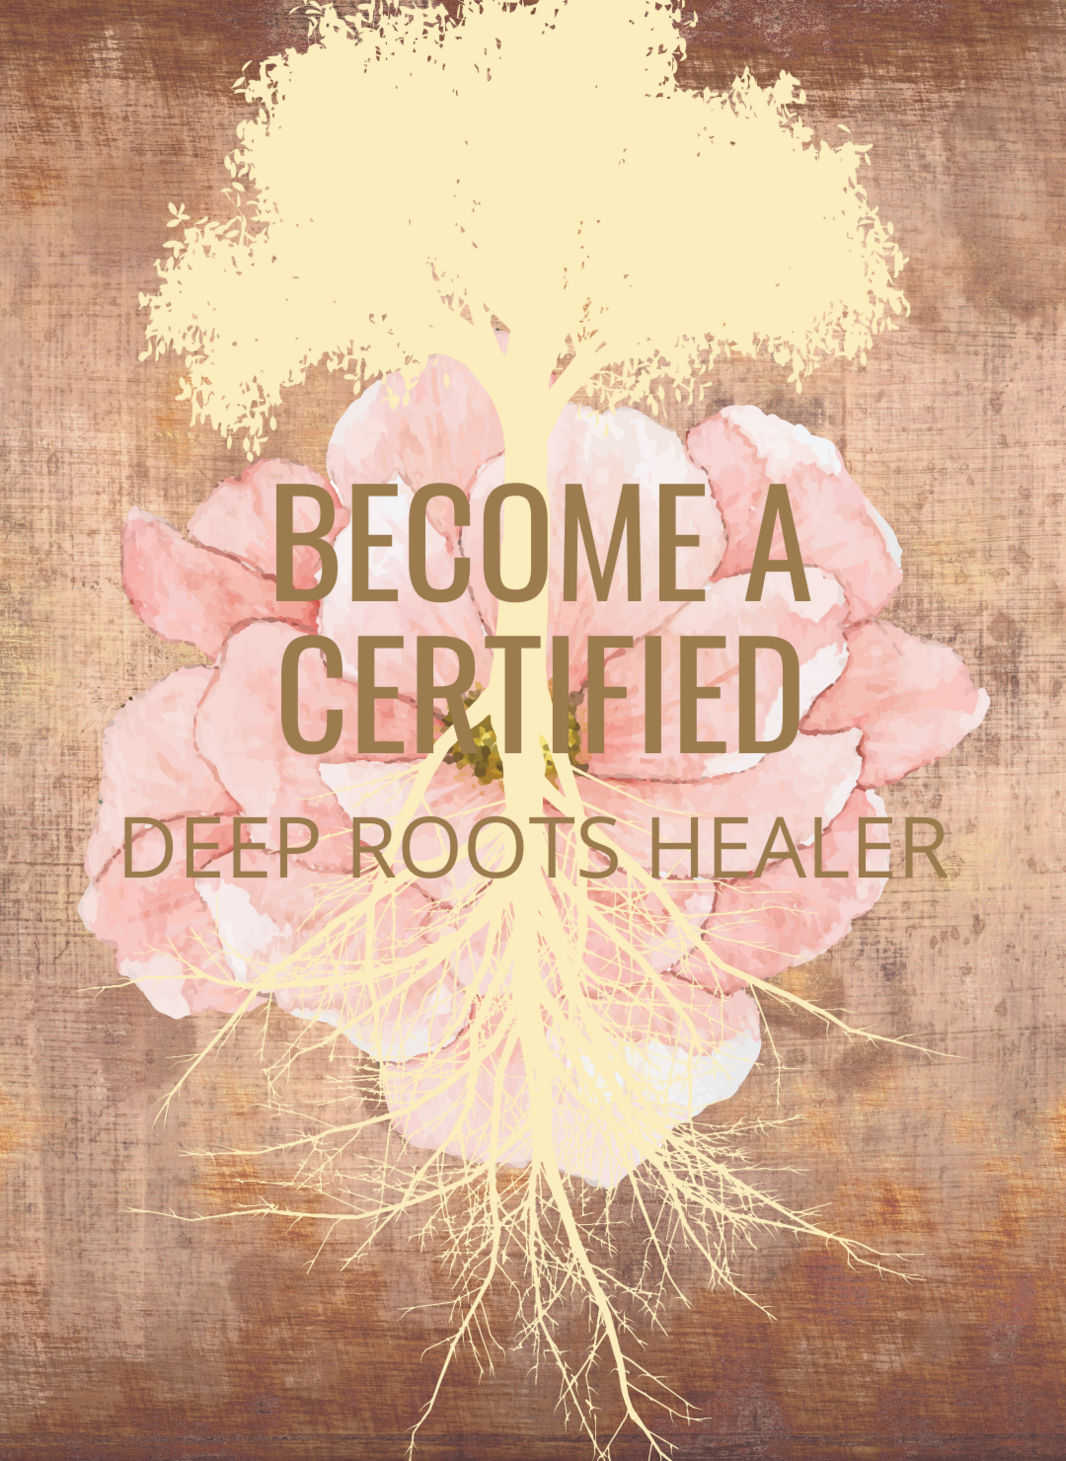 Certified deep roots healer